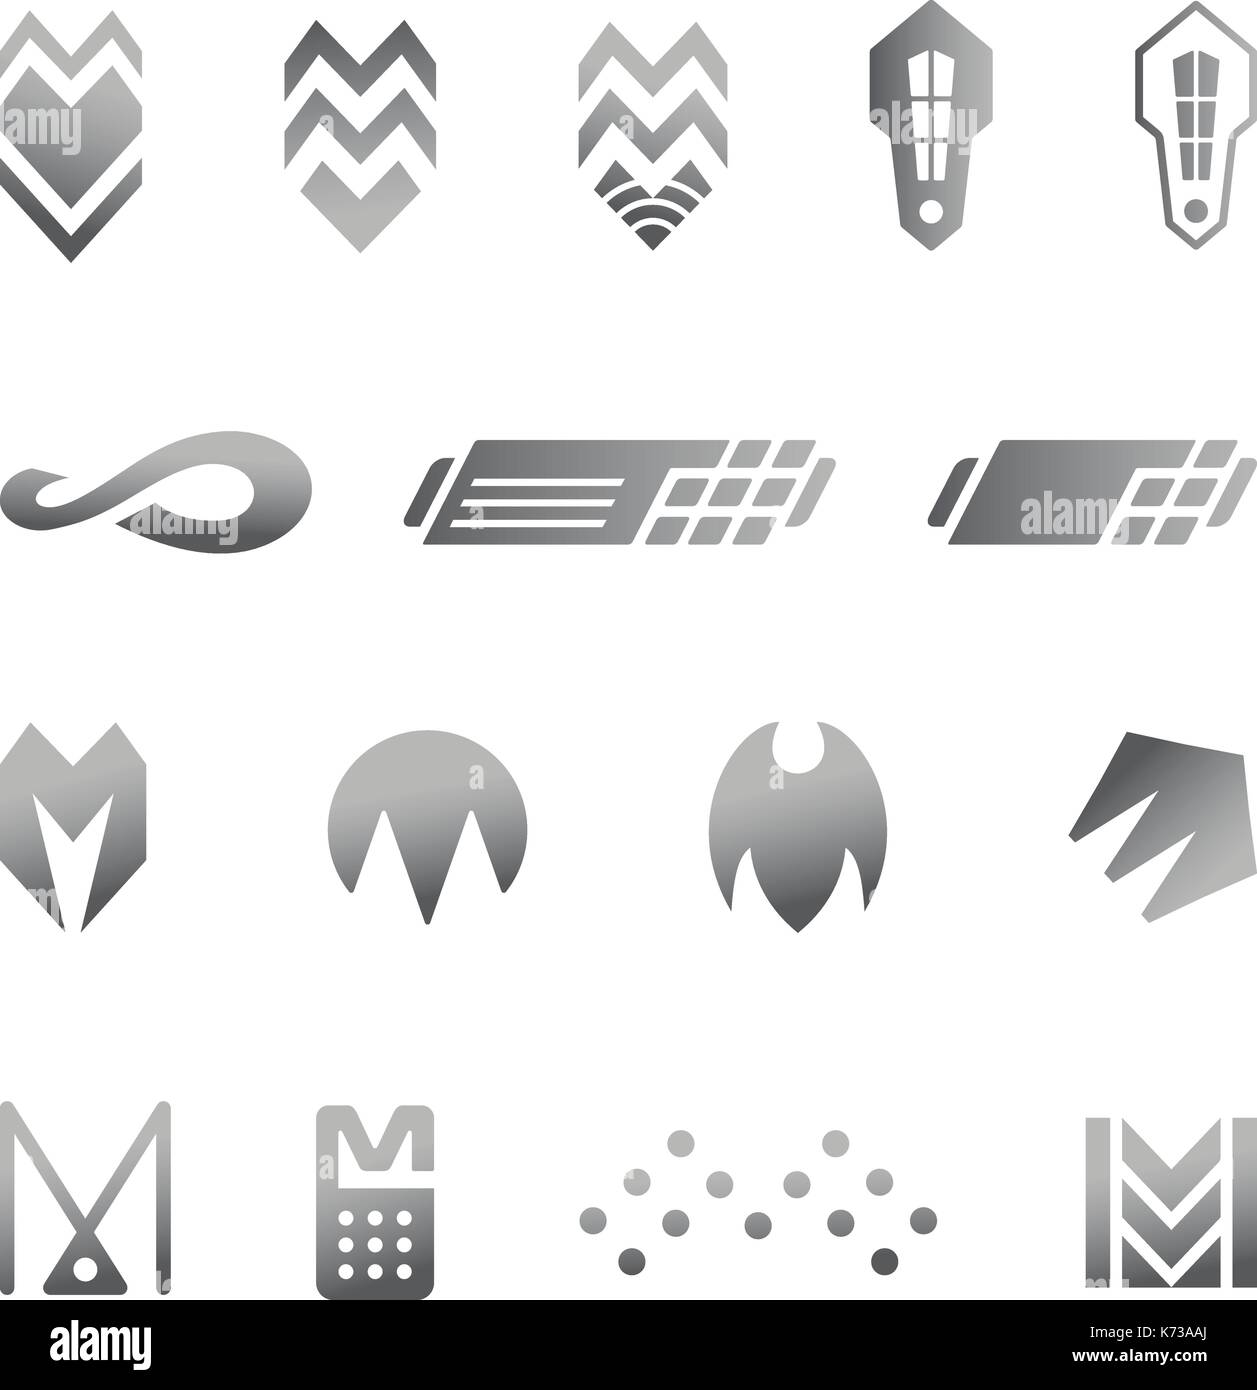 Affaires d'argent symboles abstraits pour la conception de logo Illustration de Vecteur